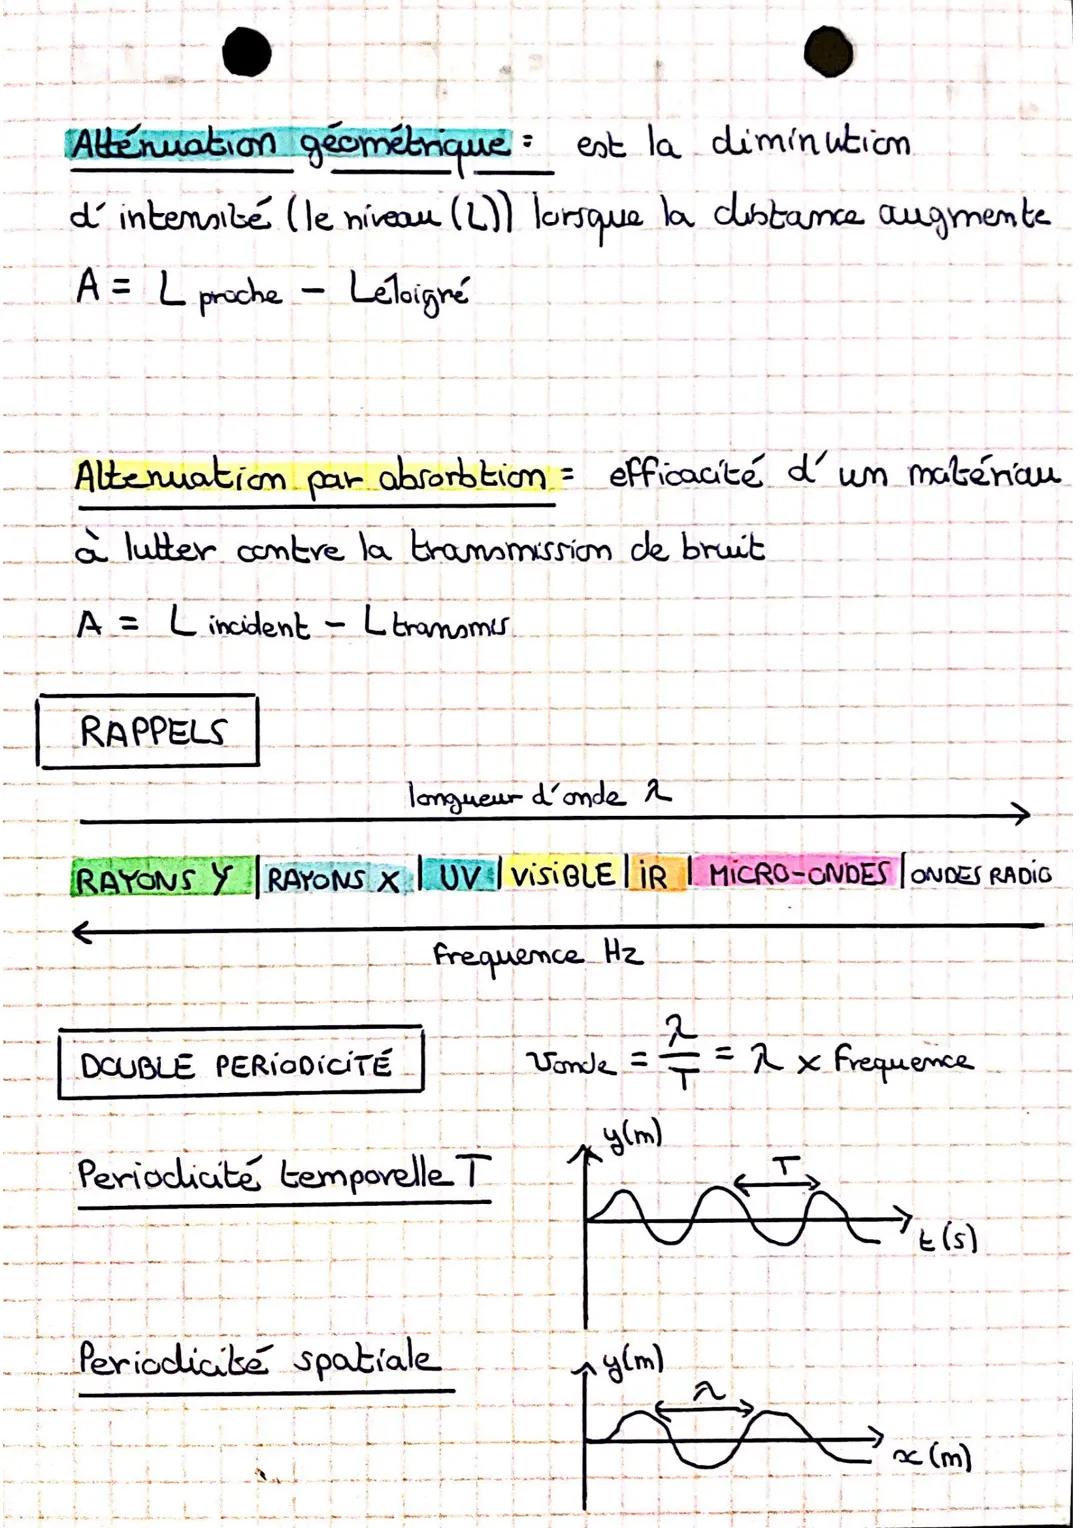 CHAPITRE 1:
TRANSFORMATIONS ACIDE - BASE
TAB = reaction chimique
aade = espèce chimique capable de perdre un ion H+
espèce chimique capable 